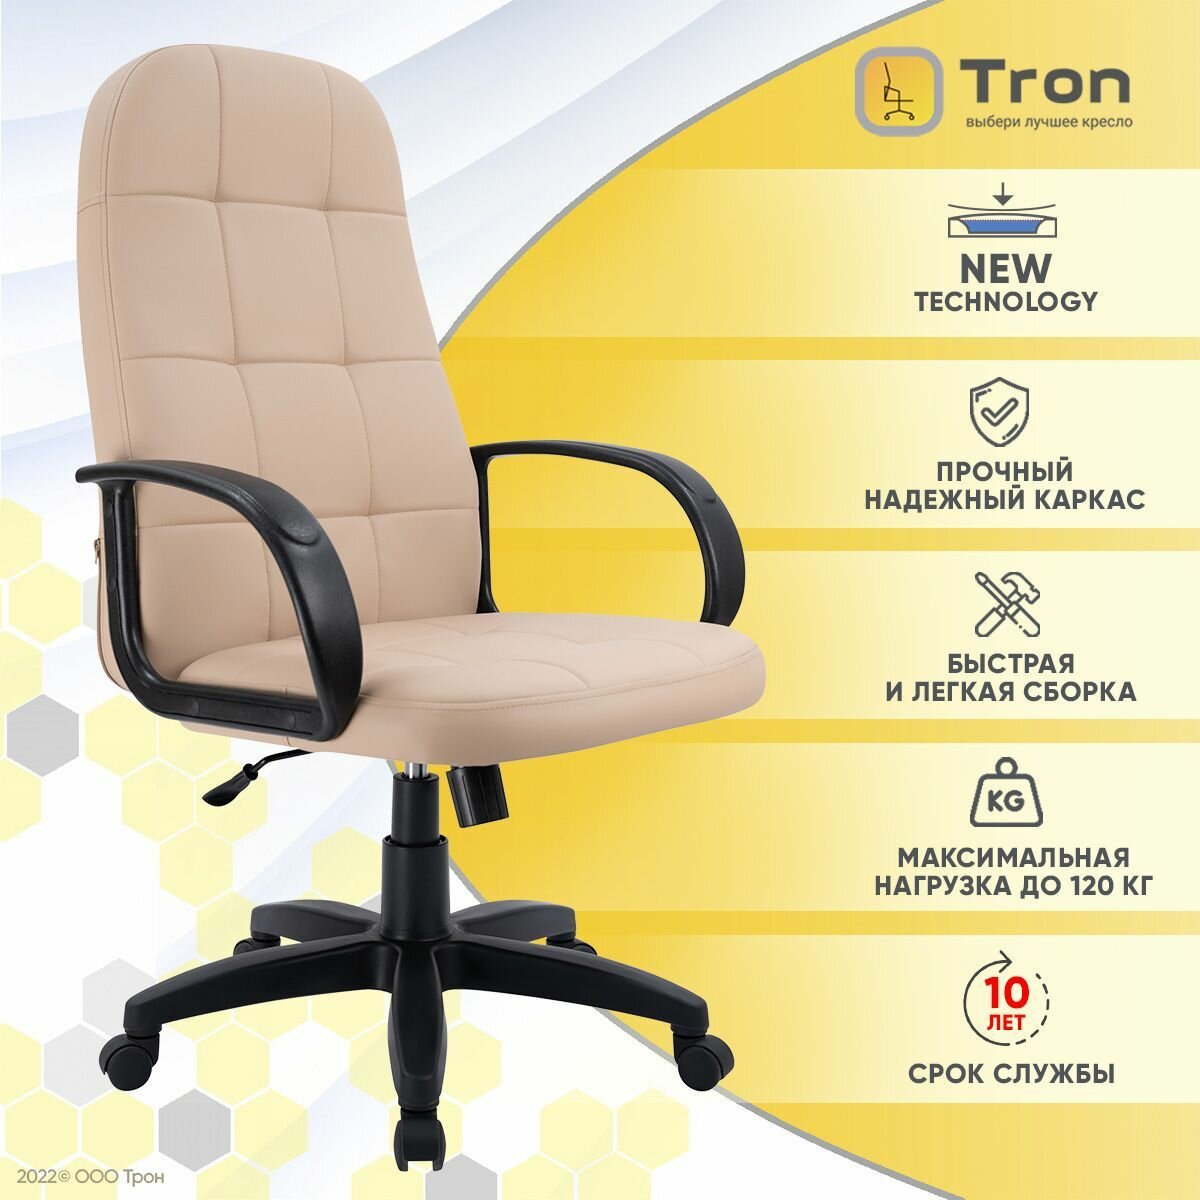 Кресло компьютерное офисное Tron V1 экокожа т.бежевый Prestige/ Standart-1021